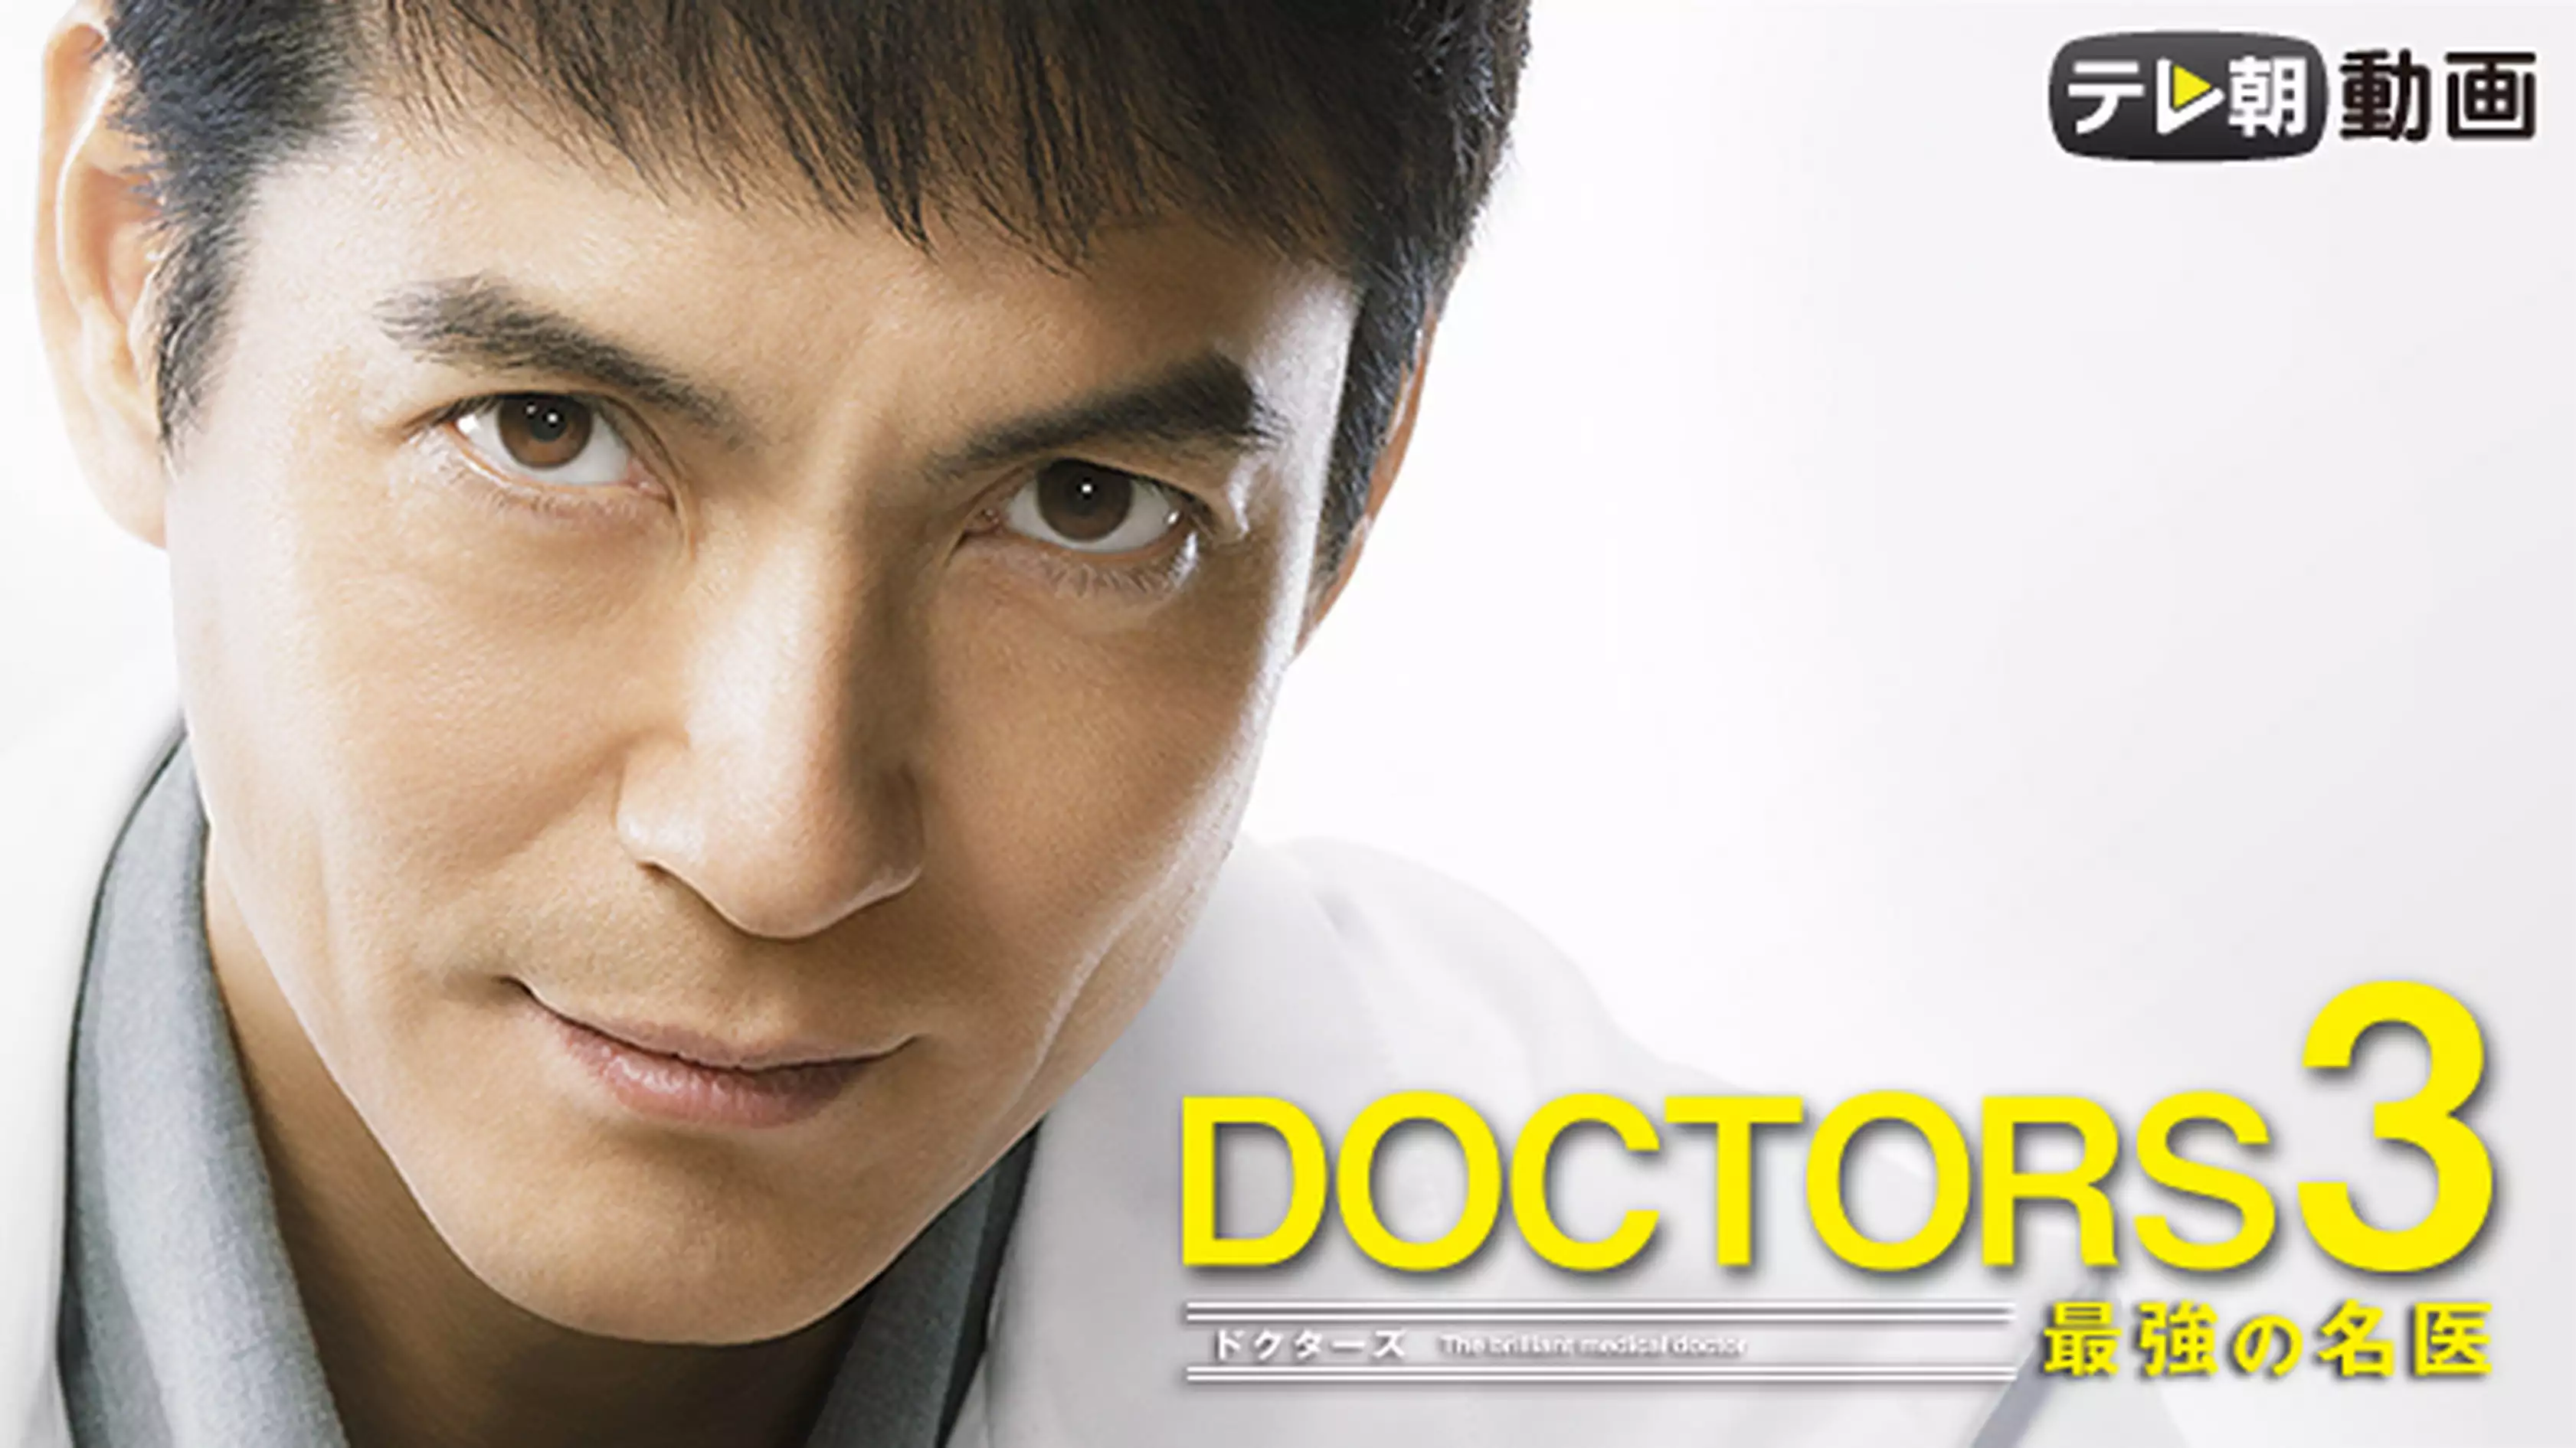 ドラマ『DOCTORS 3（ドクターズ3） 最強の名医』の動画を全話無料で見れる配信アプリまとめ